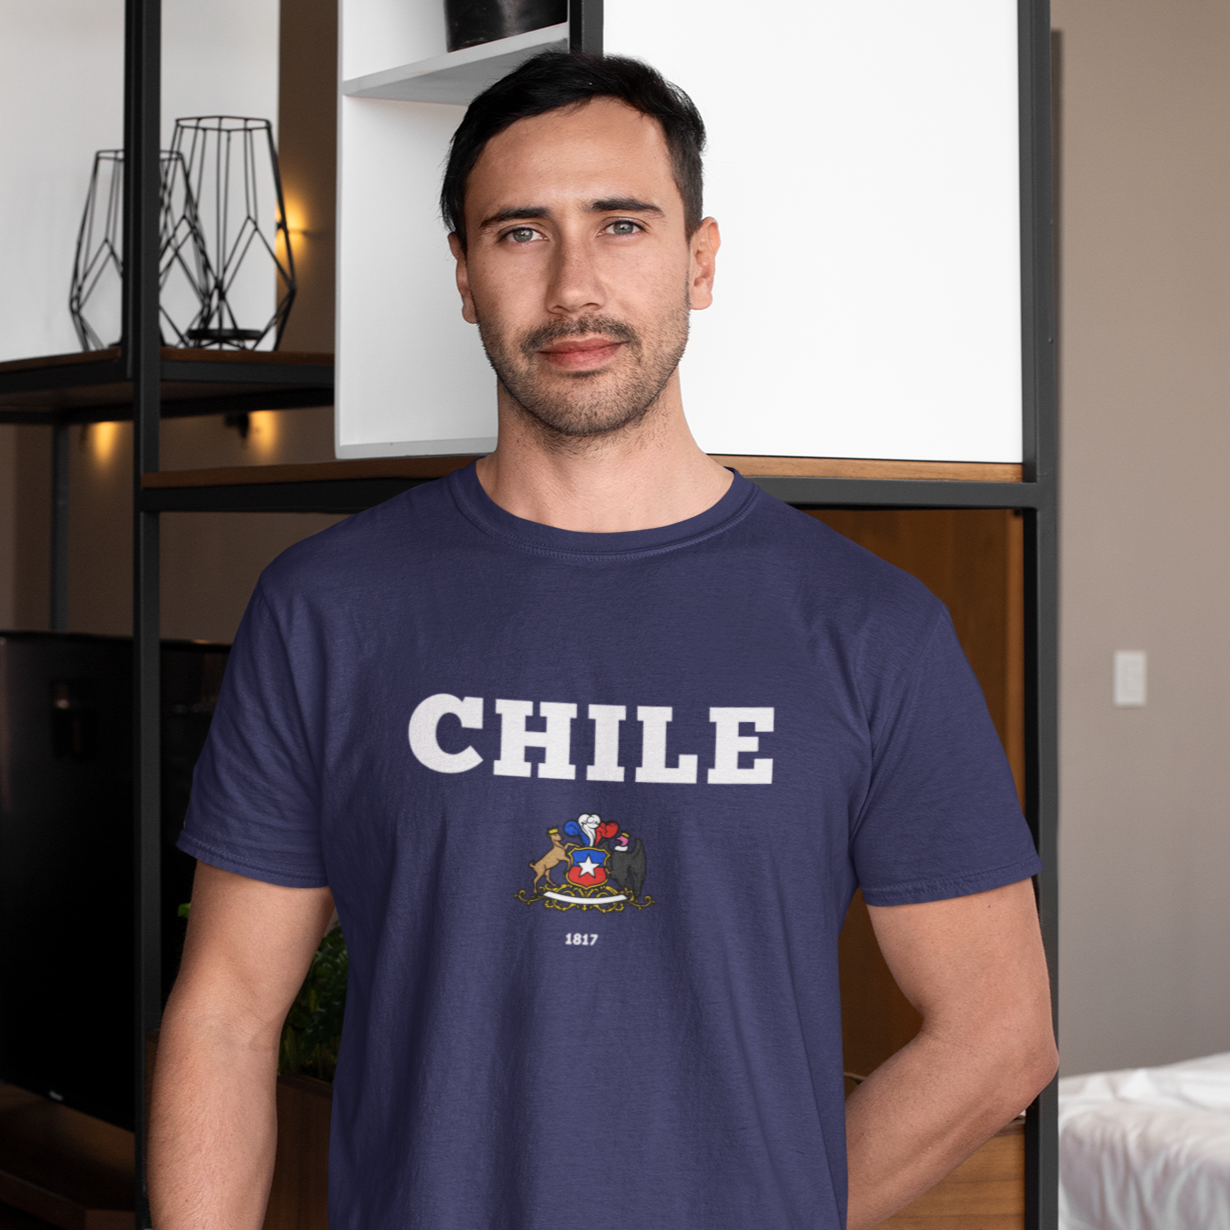 🇨🇱 Chile + Escudo